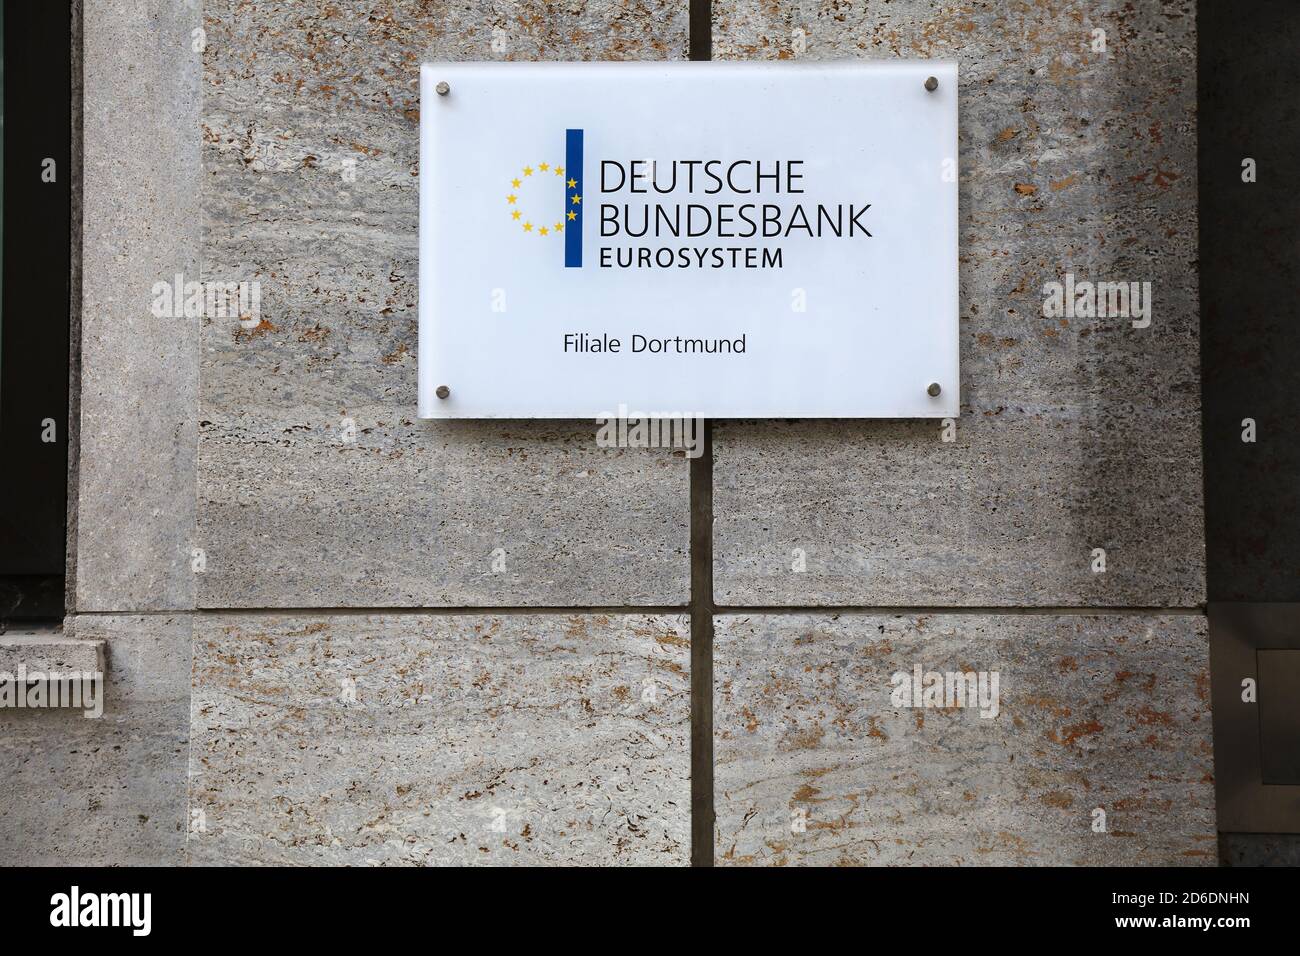 DORTMUND, 16. SEPTEMBER 2020: Deutsche Bundesbank, wörtlich "Deutsche Bundesbank" in Dortmund. Es ist die Zentralbank von Ge Stockfoto